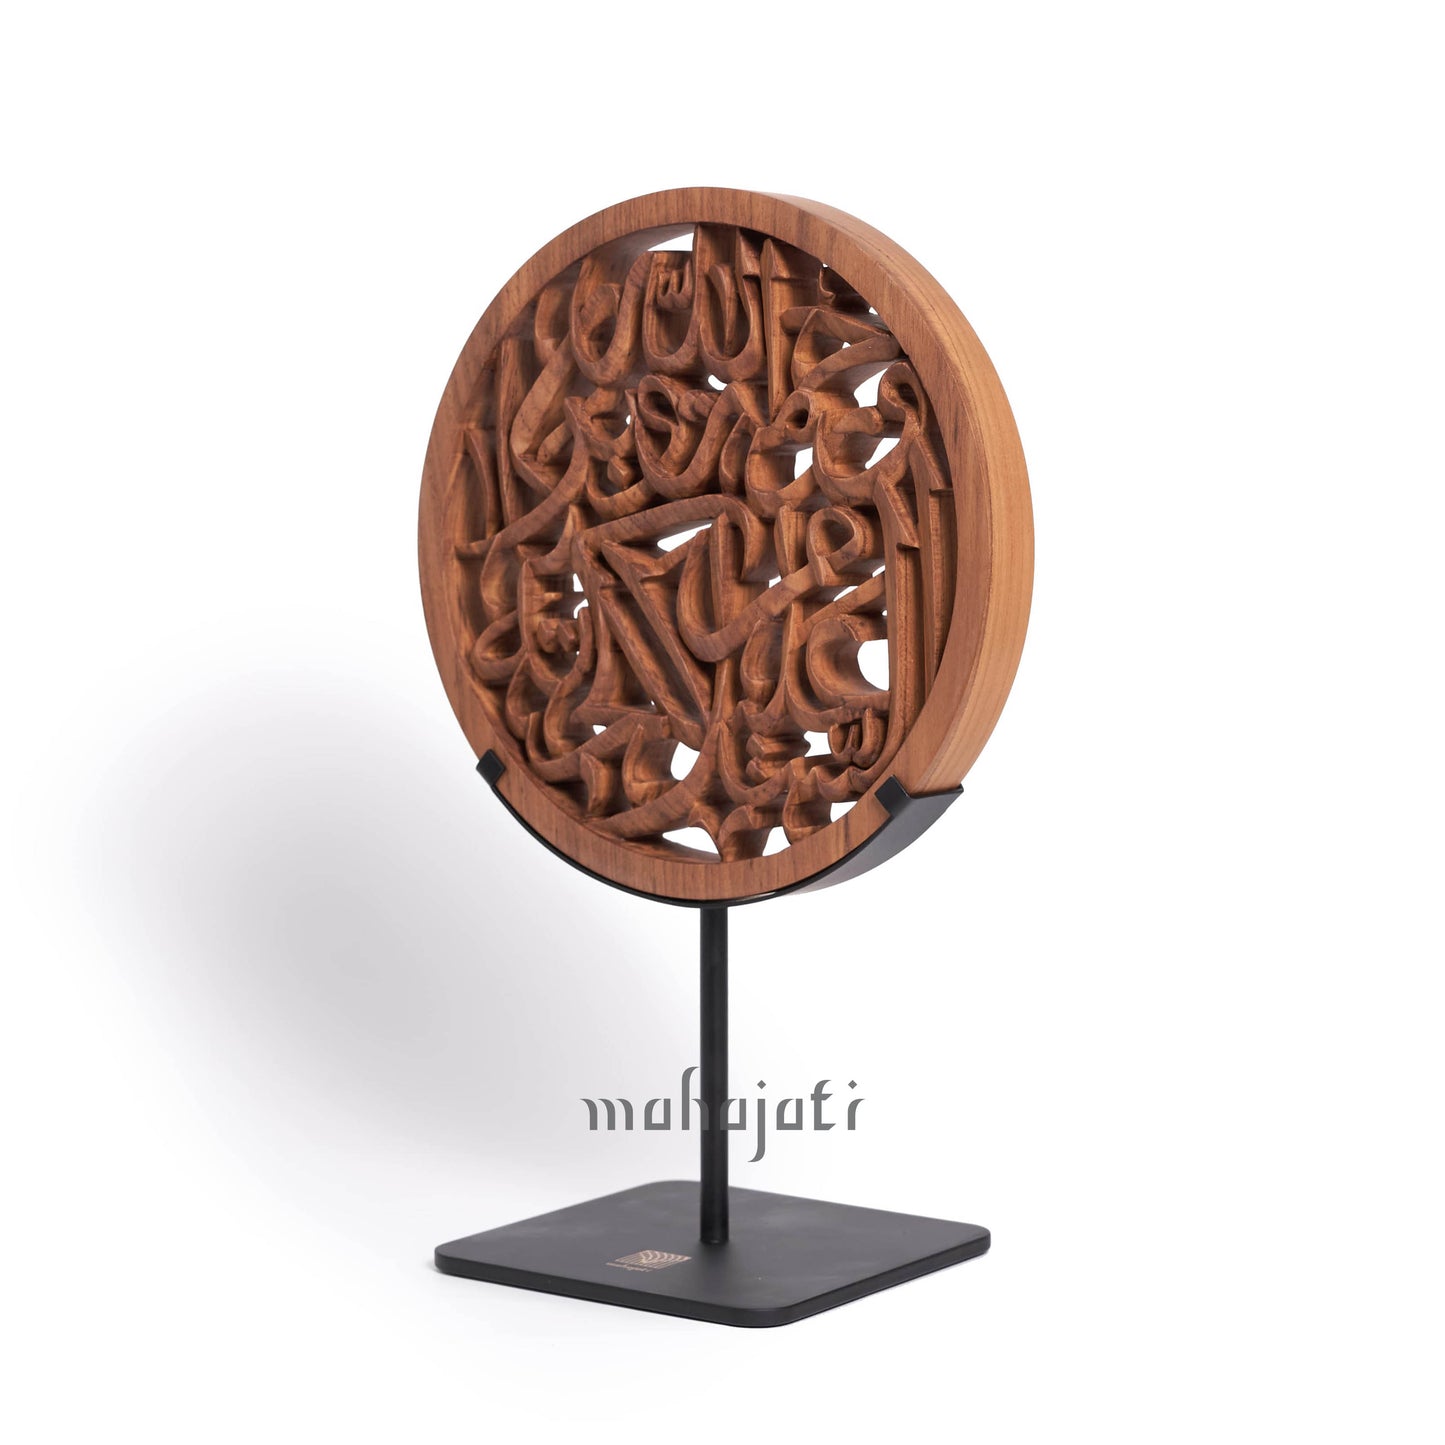 Assalamualaikum - Semi 3D - 20cm Diameter - Mahajati - Table Decor